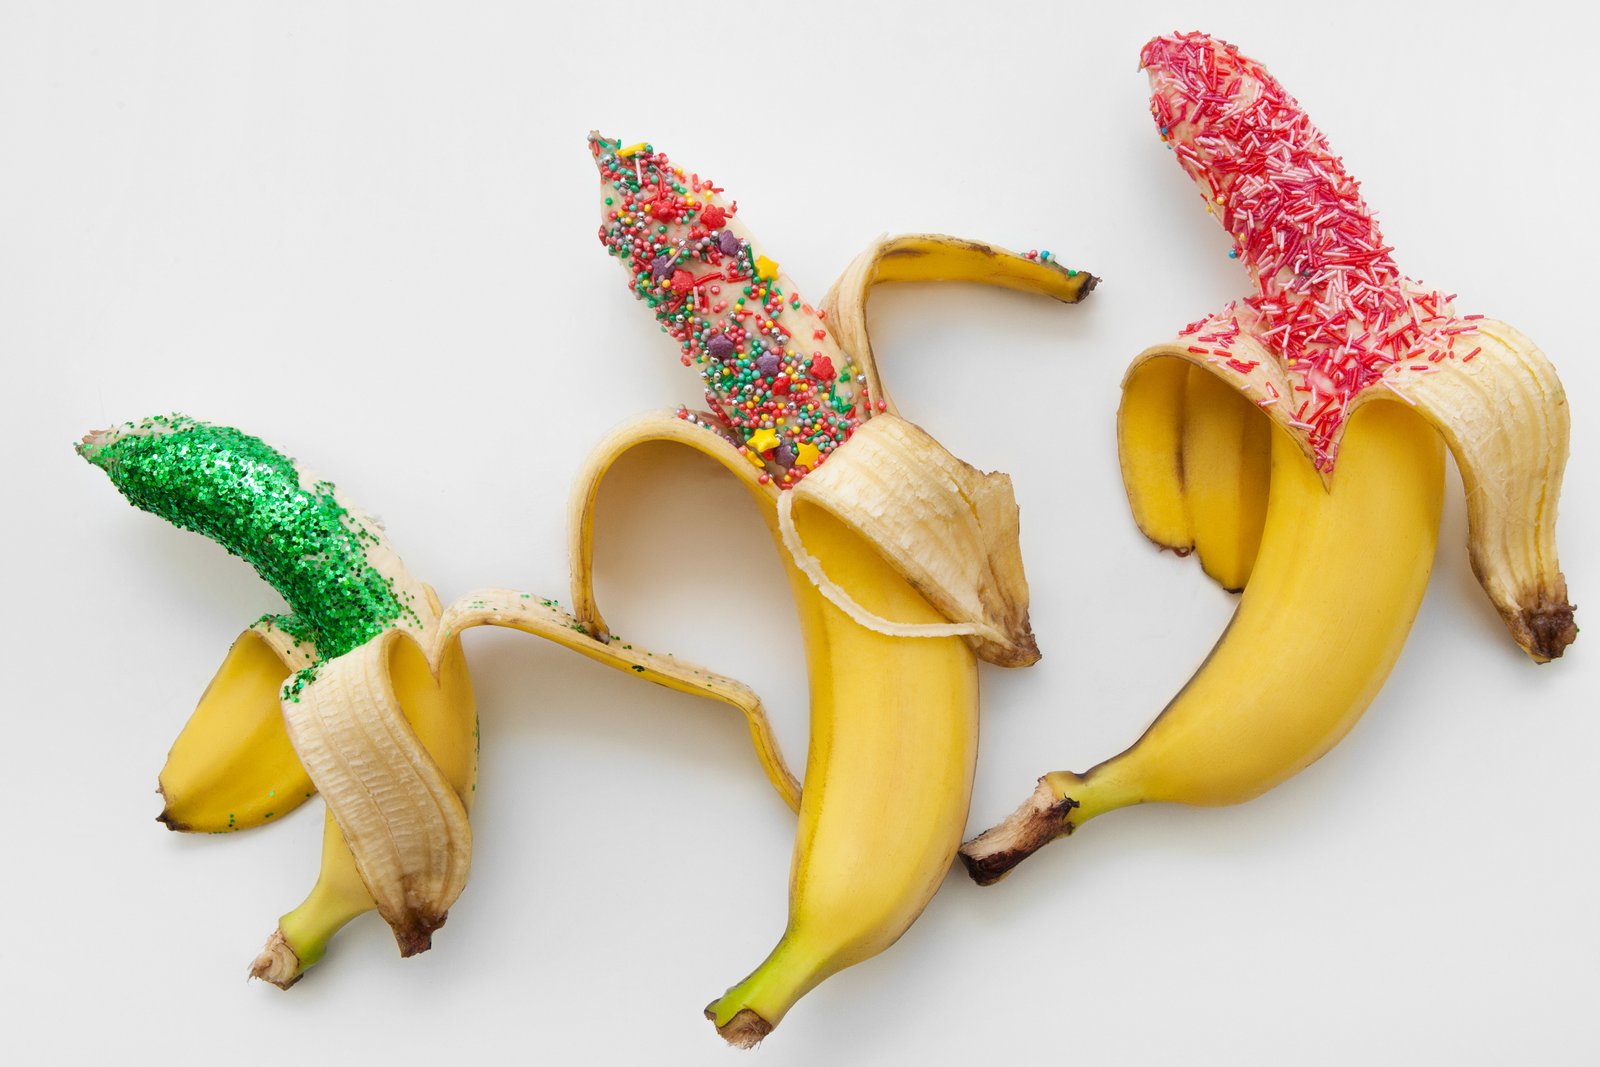 Banány ako symbol pre rôzne veľkosti penisu